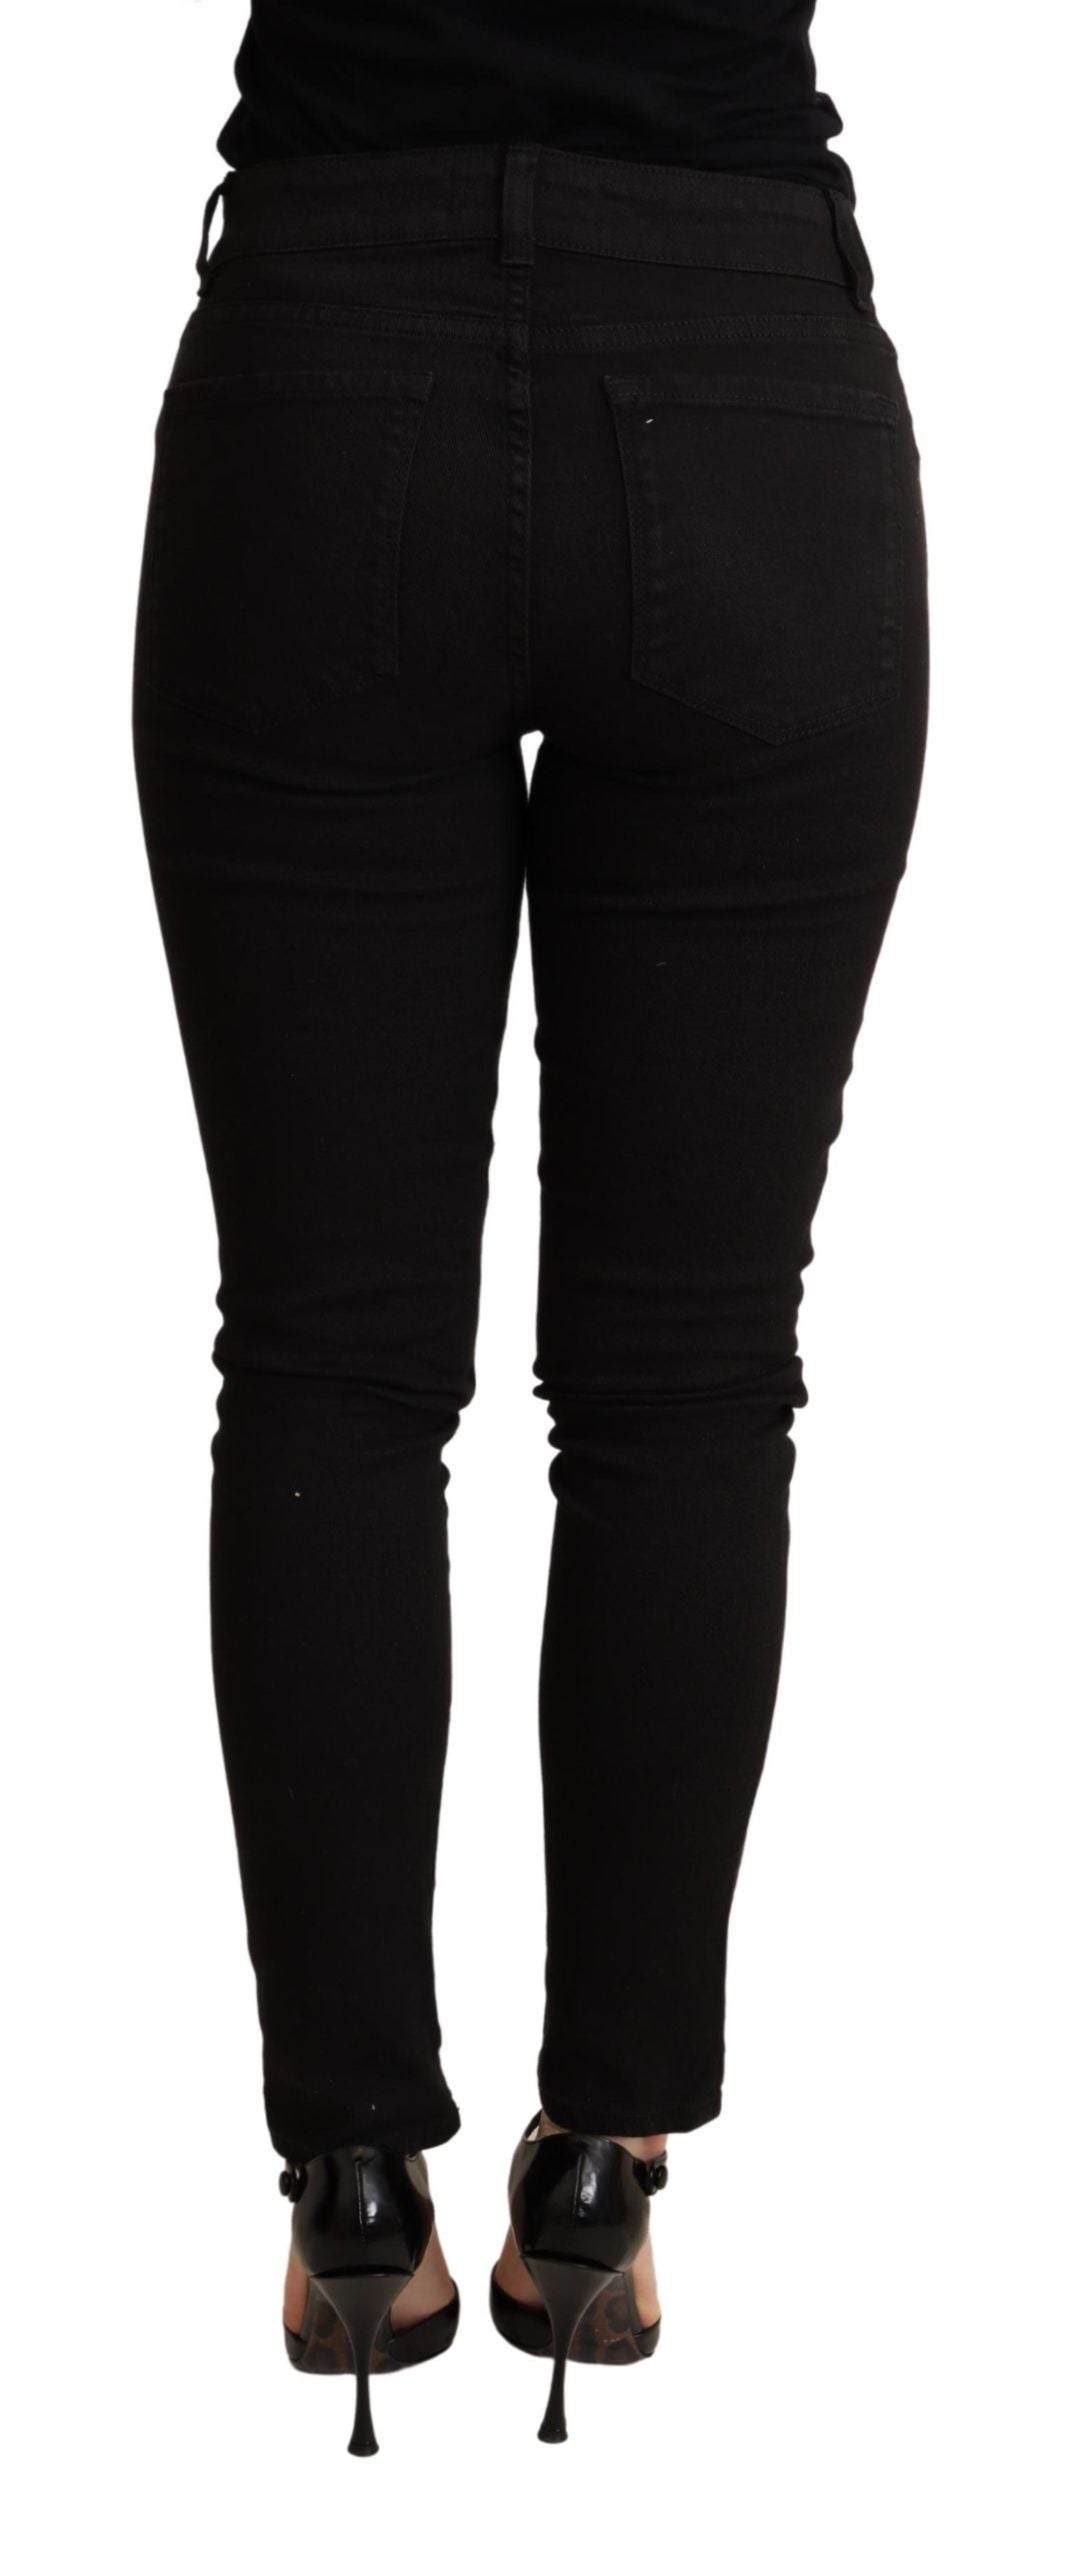 Elegant Slim Black Skinny Jeans